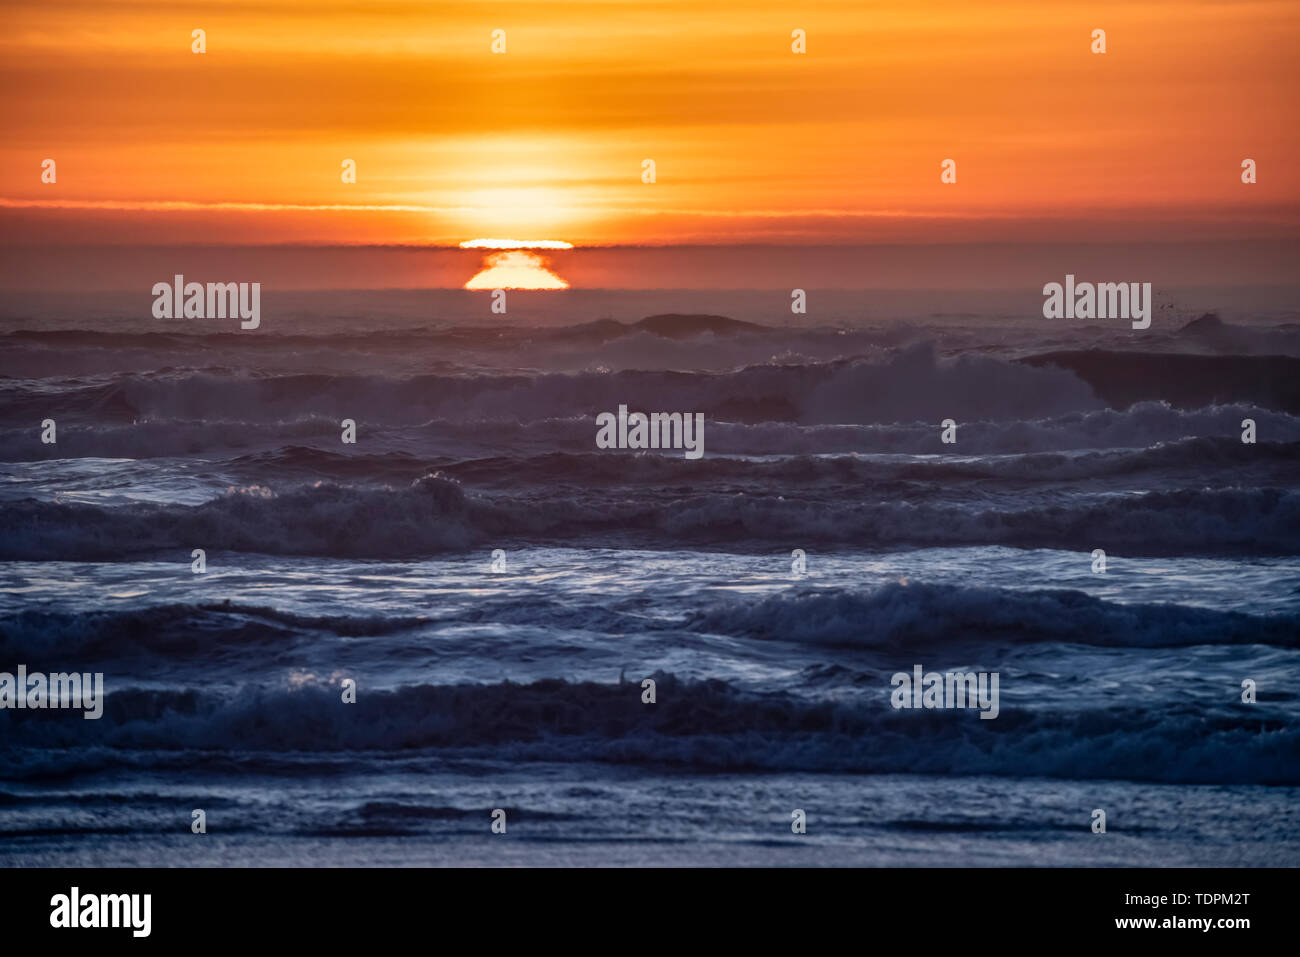 Tramonto sulle onde a Cape Disappointment, Washington. L'inversione atmosferica fa sì che il sole appaia in più posizioni contemporaneamente. Questo i... Foto Stock